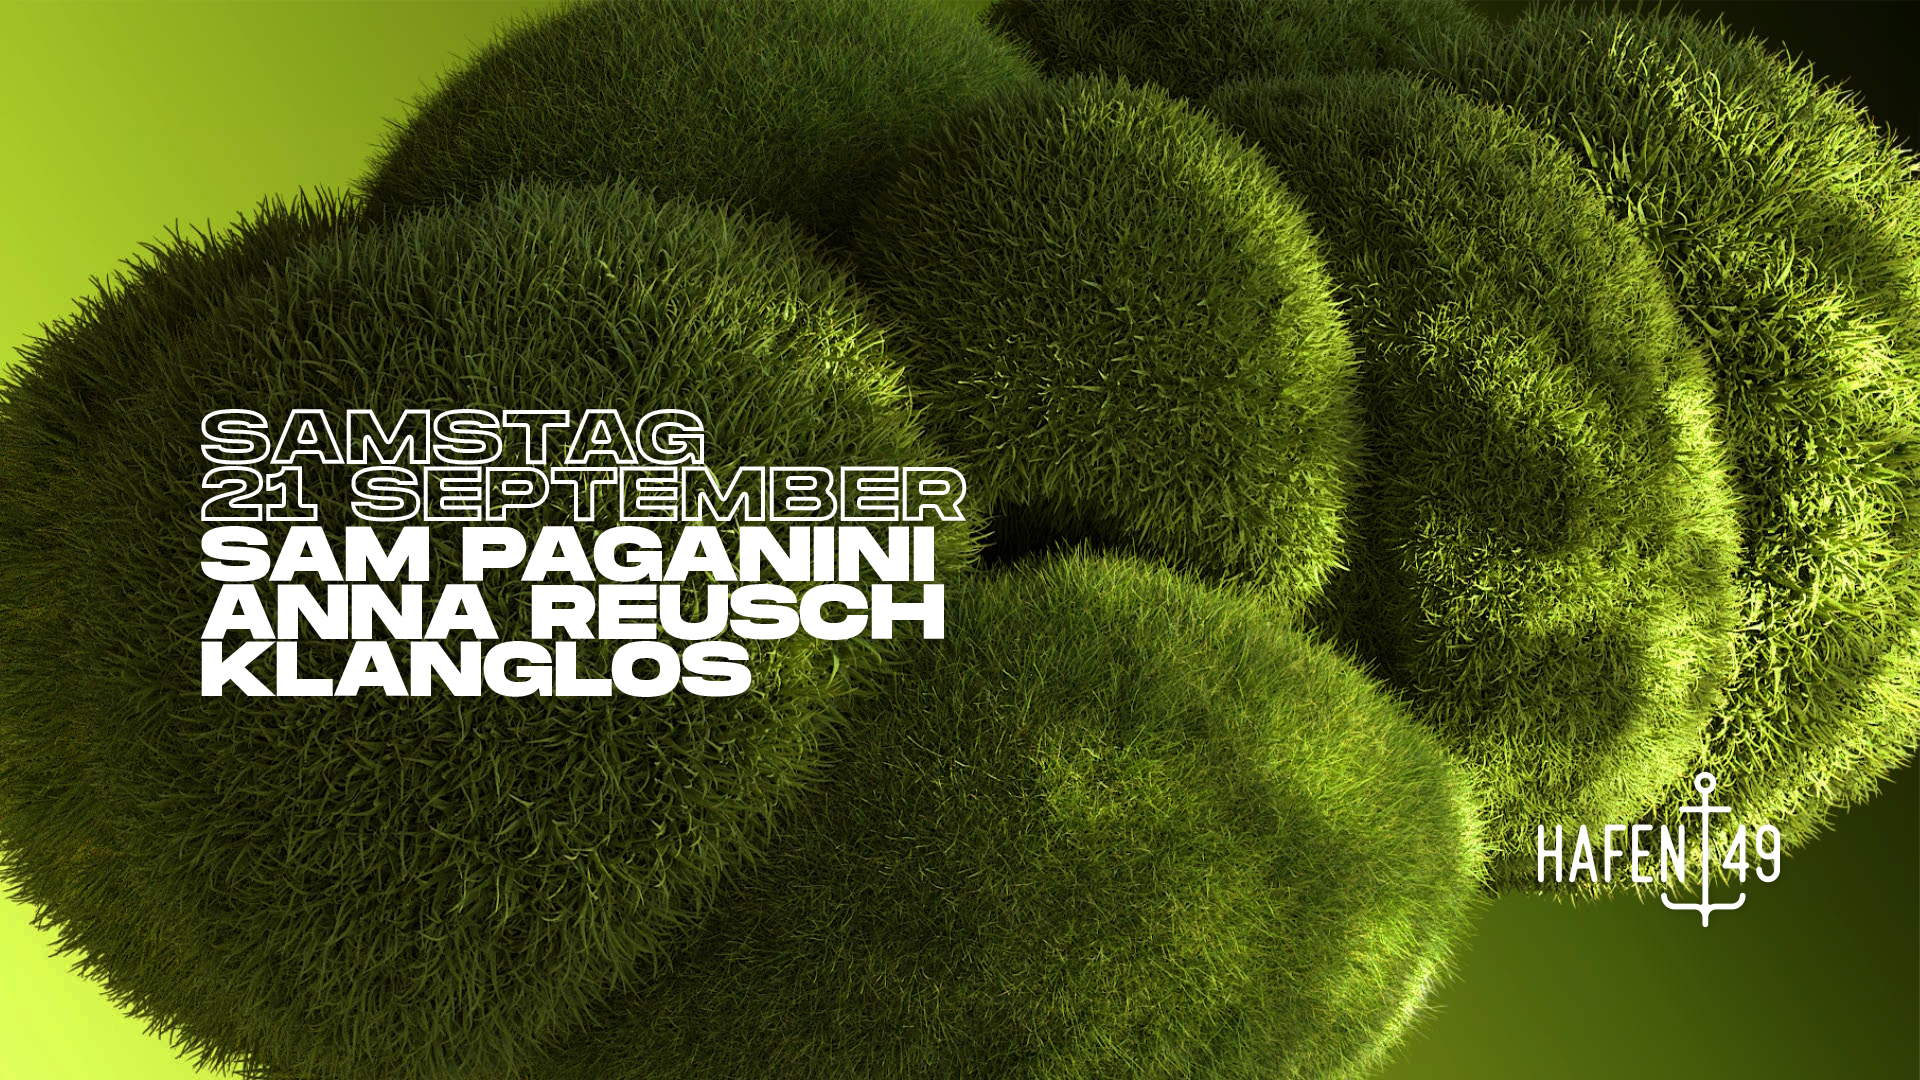 Sam Paganini, Anna Reusch, Klanglos - Página frontal